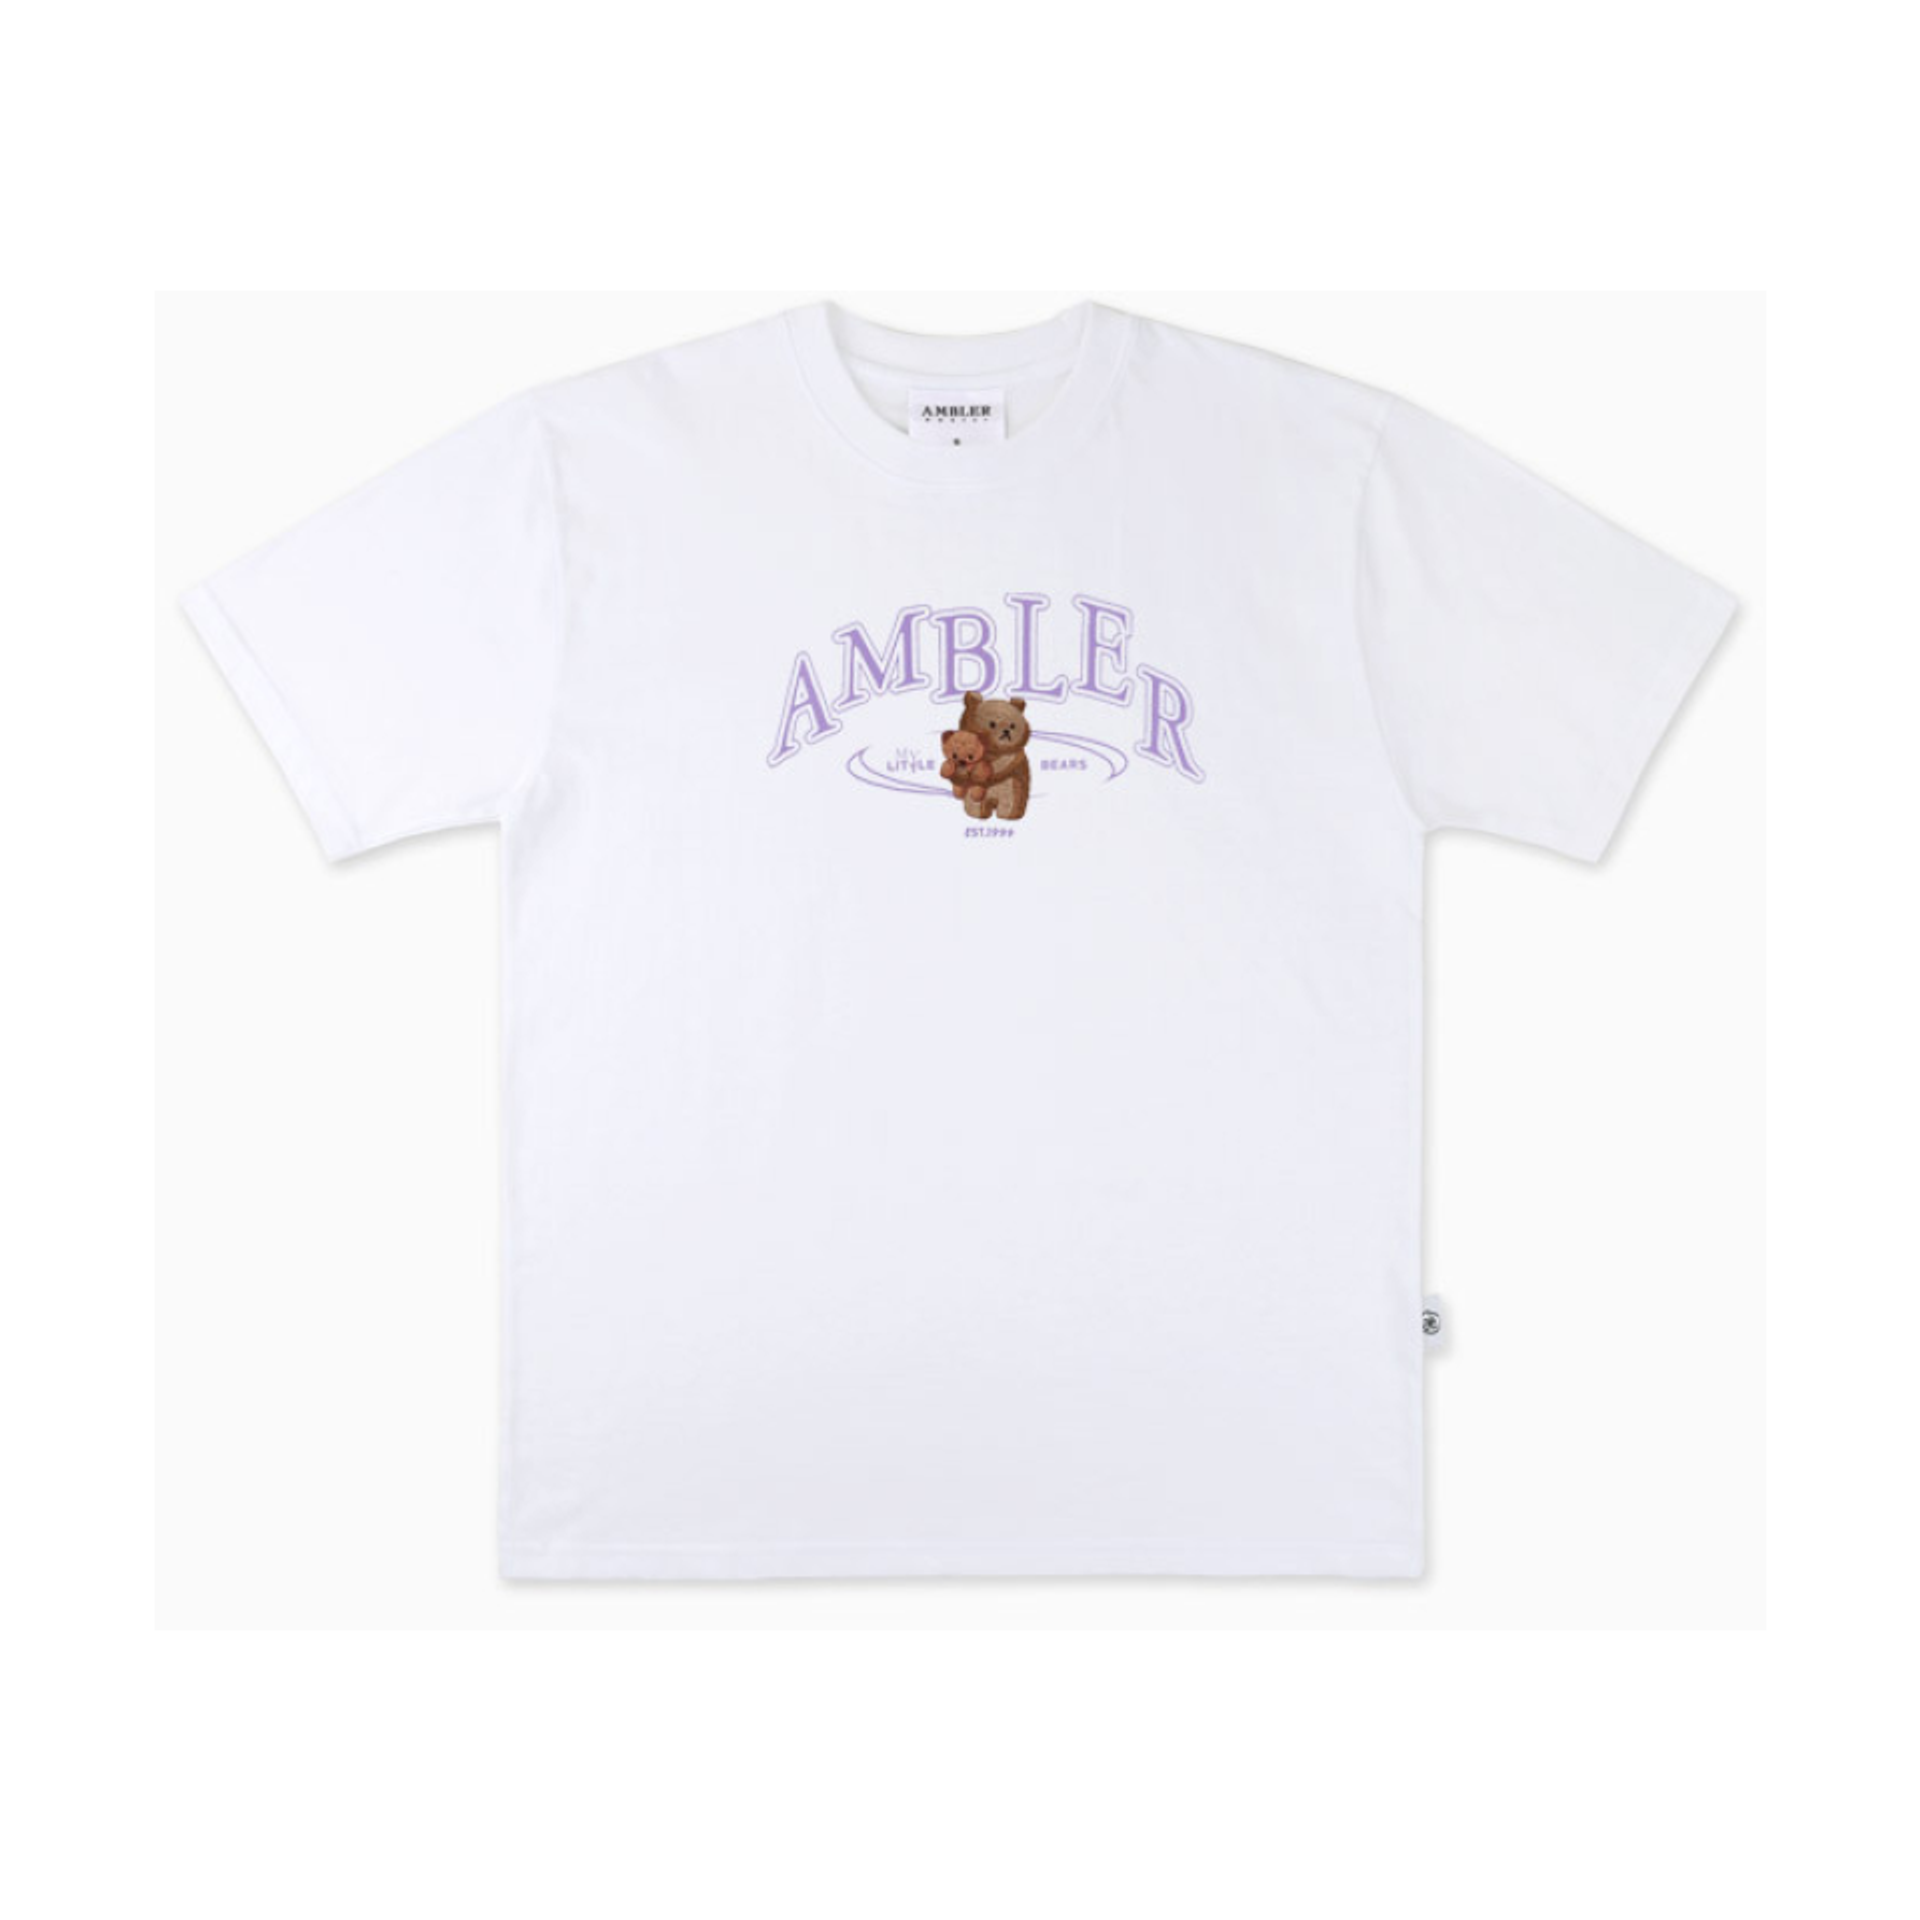 Ambler My Little Bears Overfit Short Sleeve T-Shirt 'White'